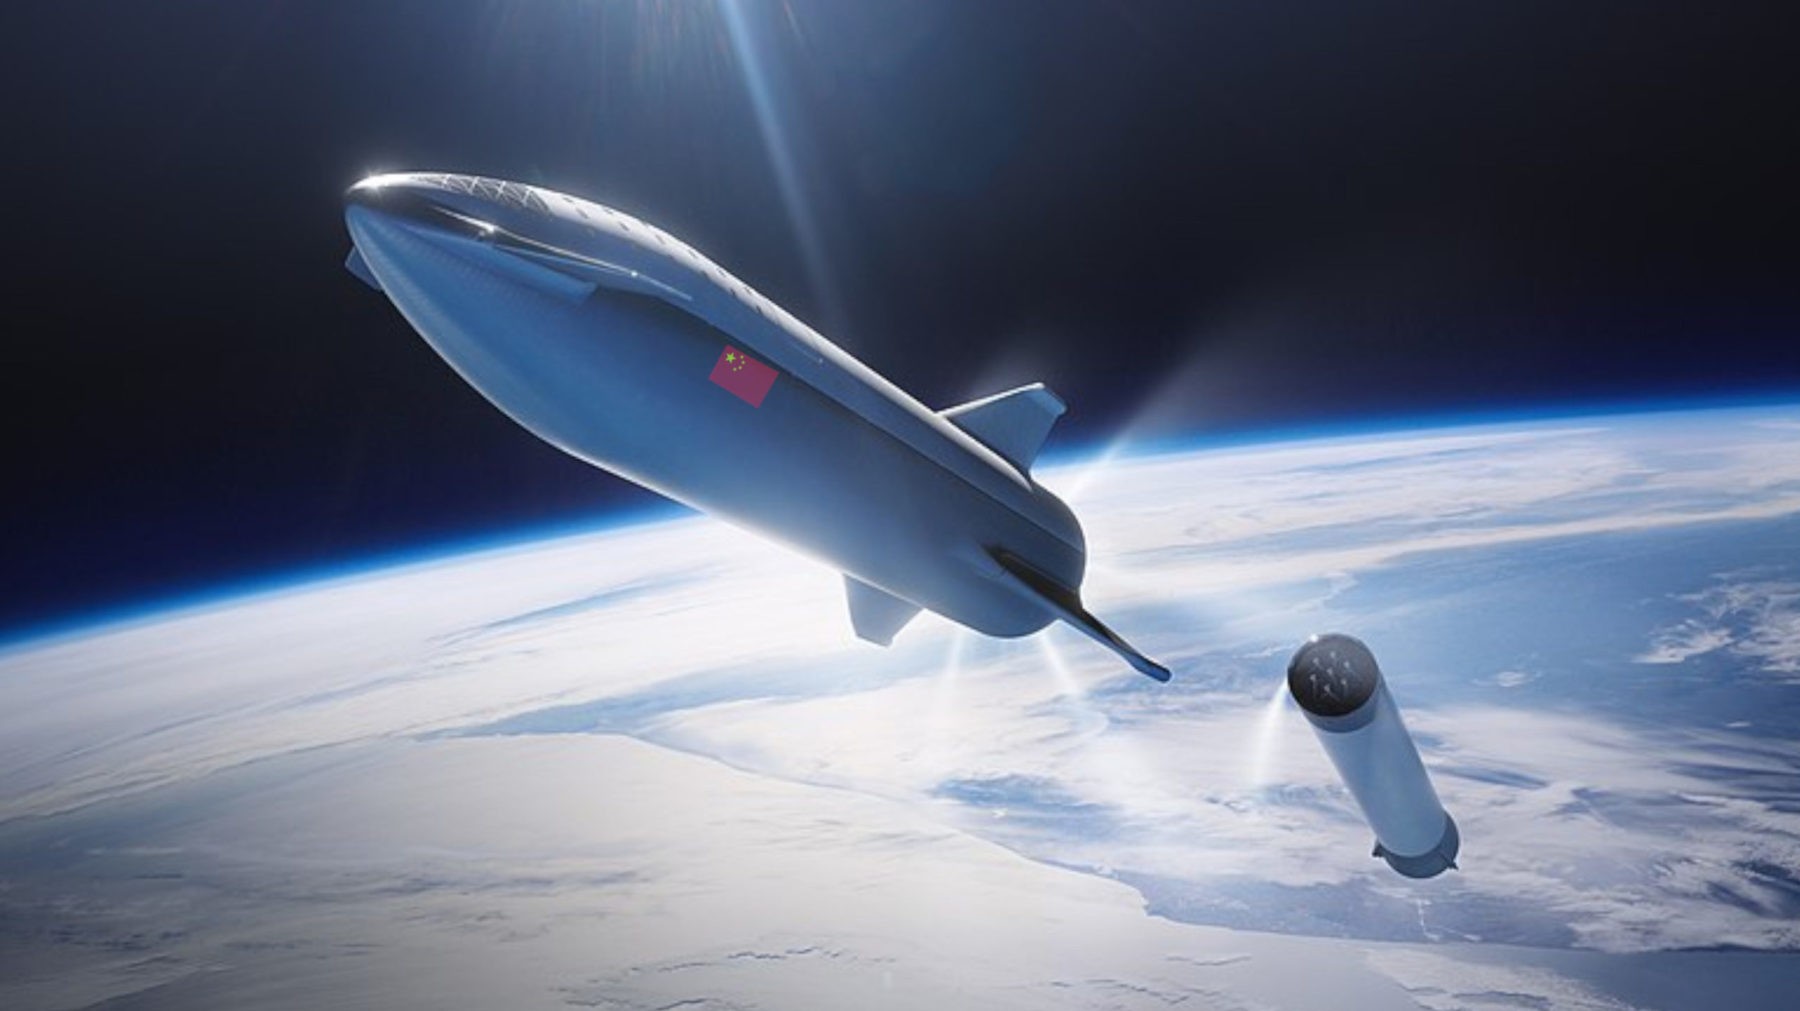 spacex. Perché ne Russia ne Cina, ne nessun altro riuscirà a copiare Starship di Spacex - 02/08/2020